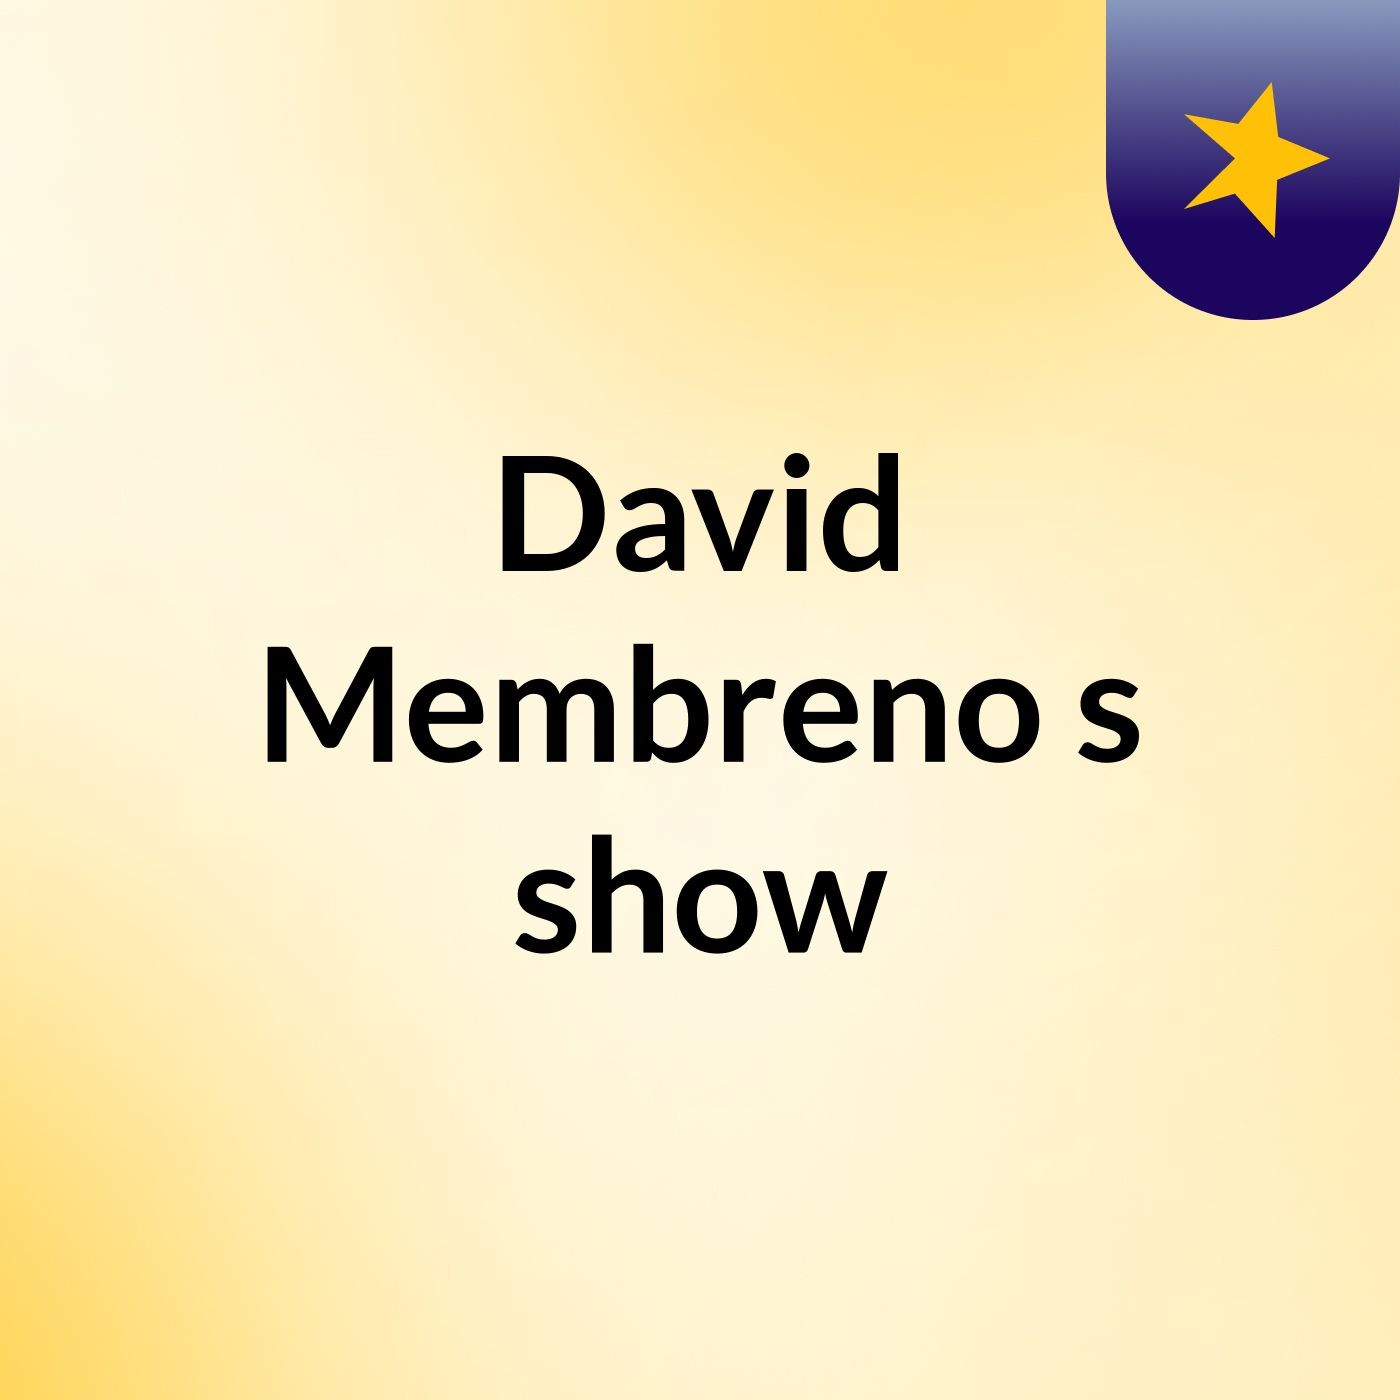 David Membreno's show